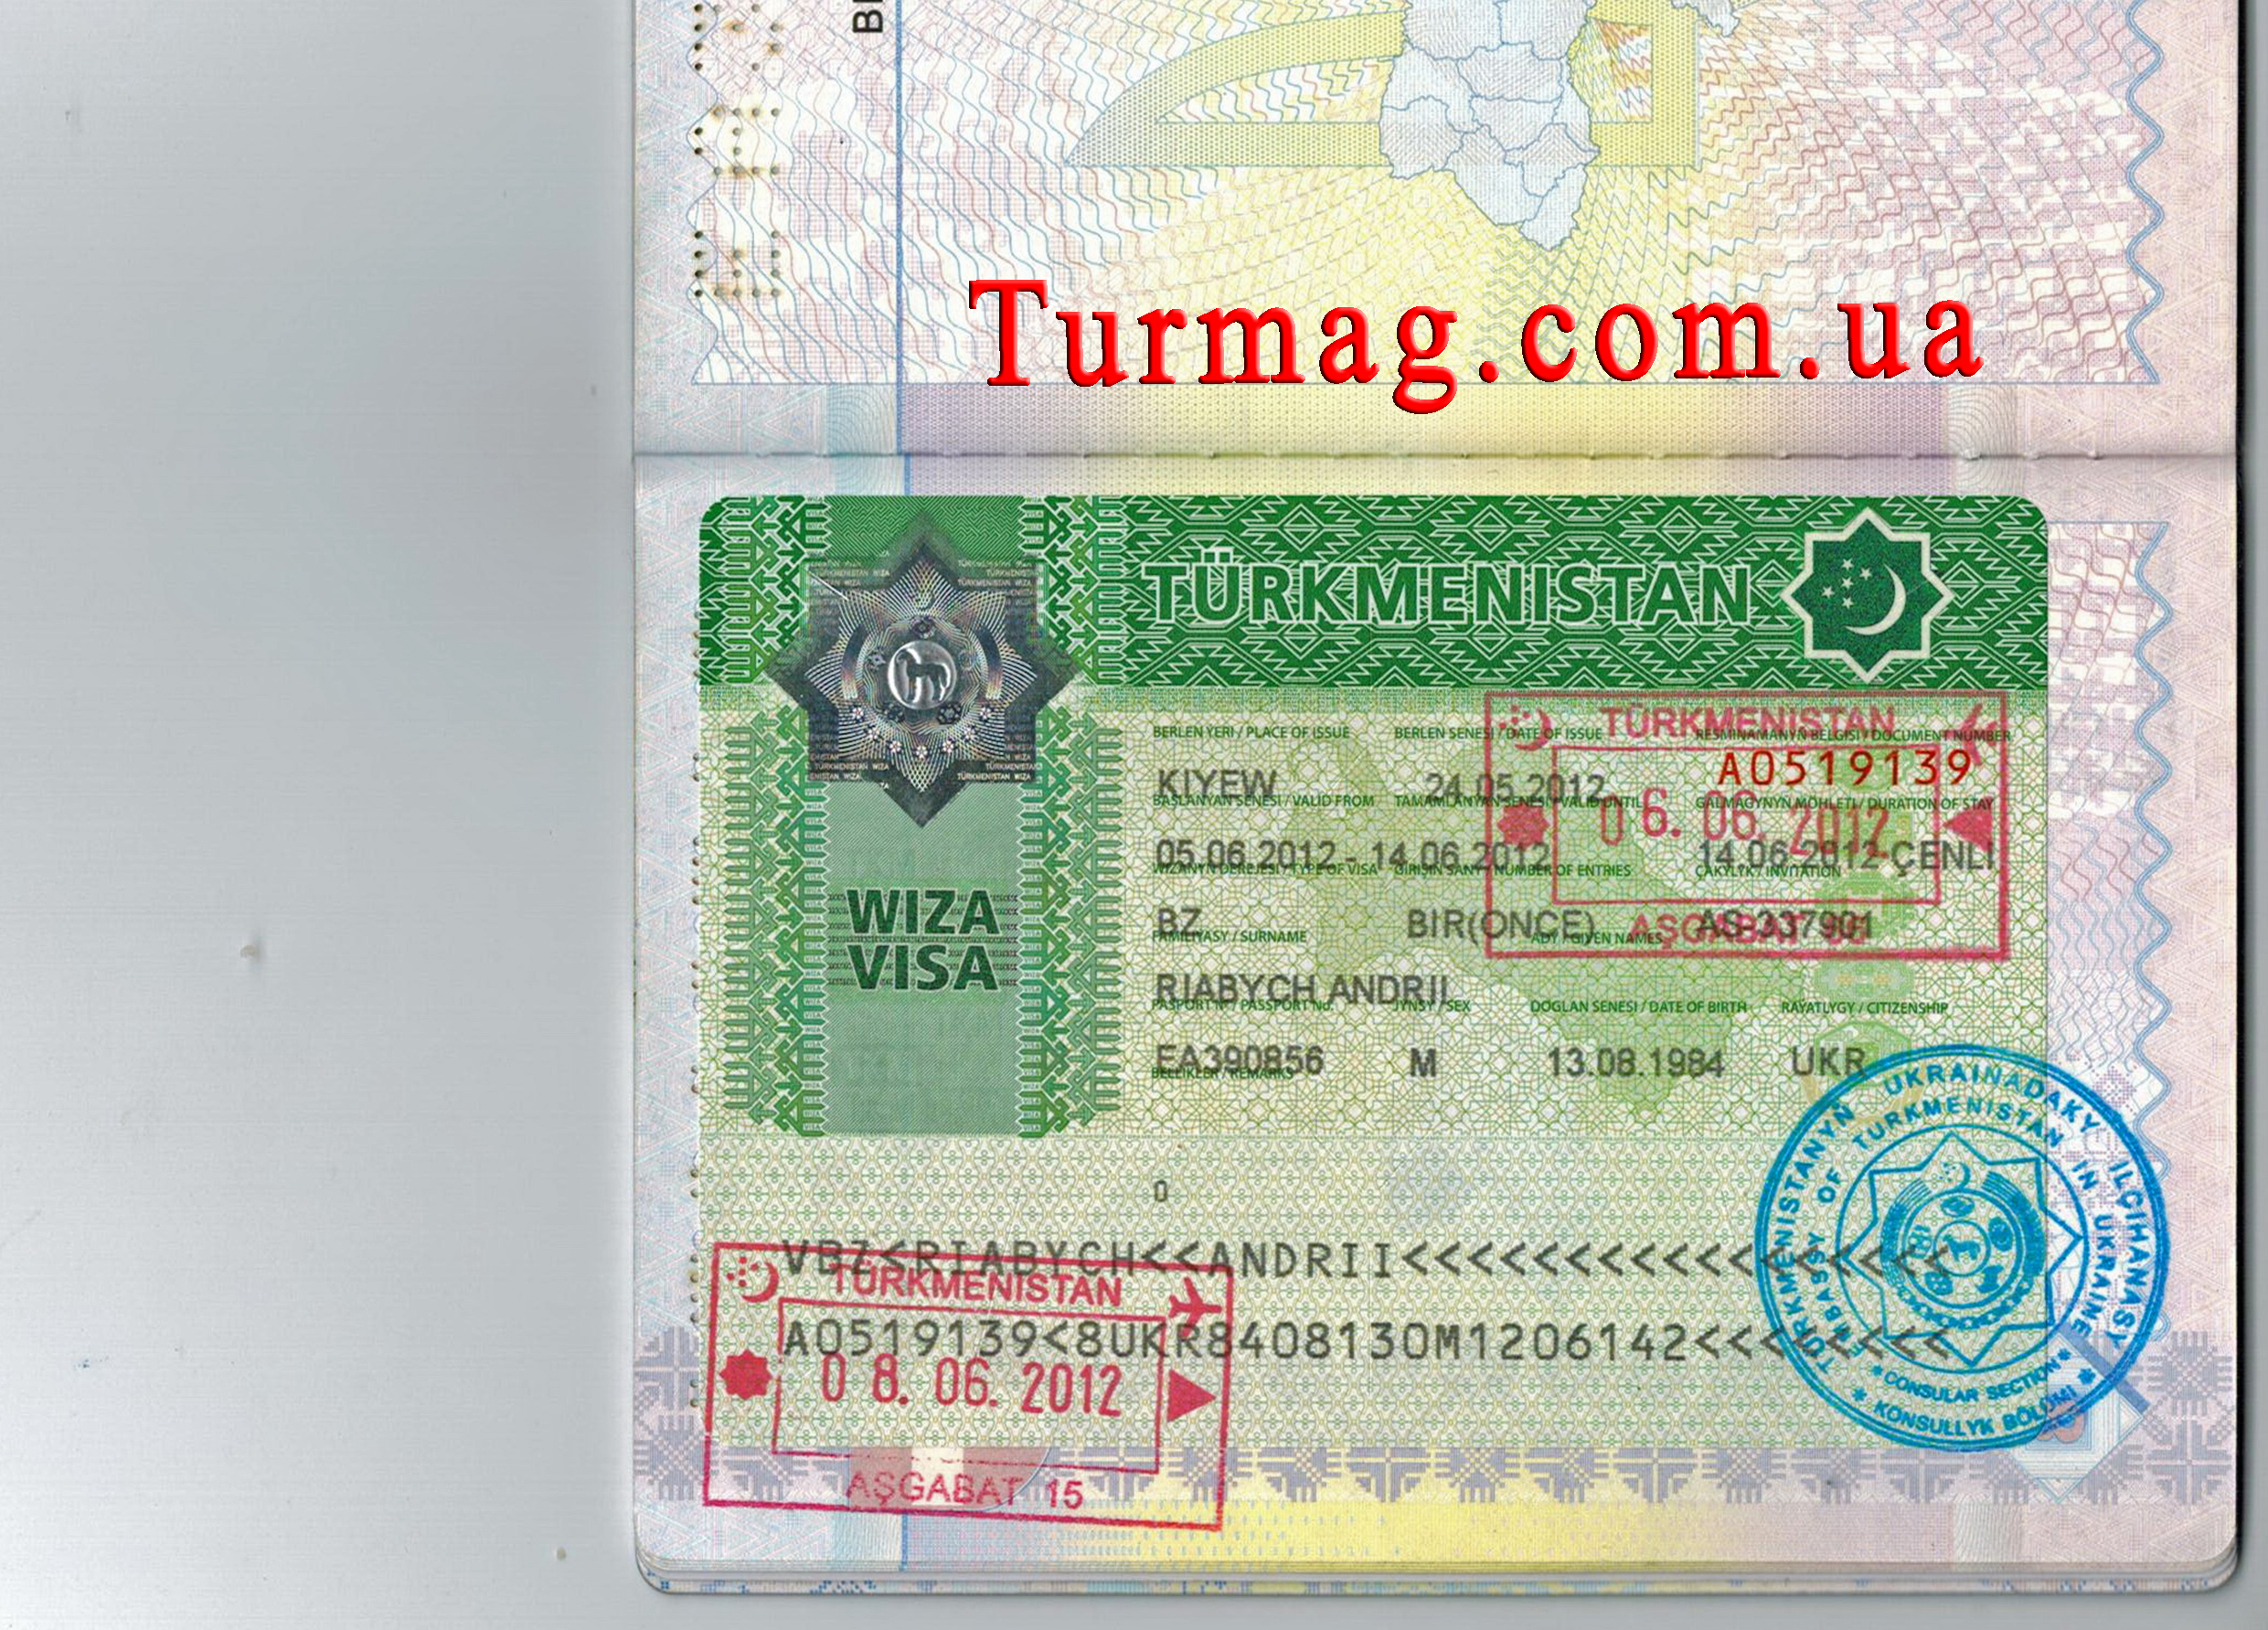 Внешний вид визы в Туркменистан